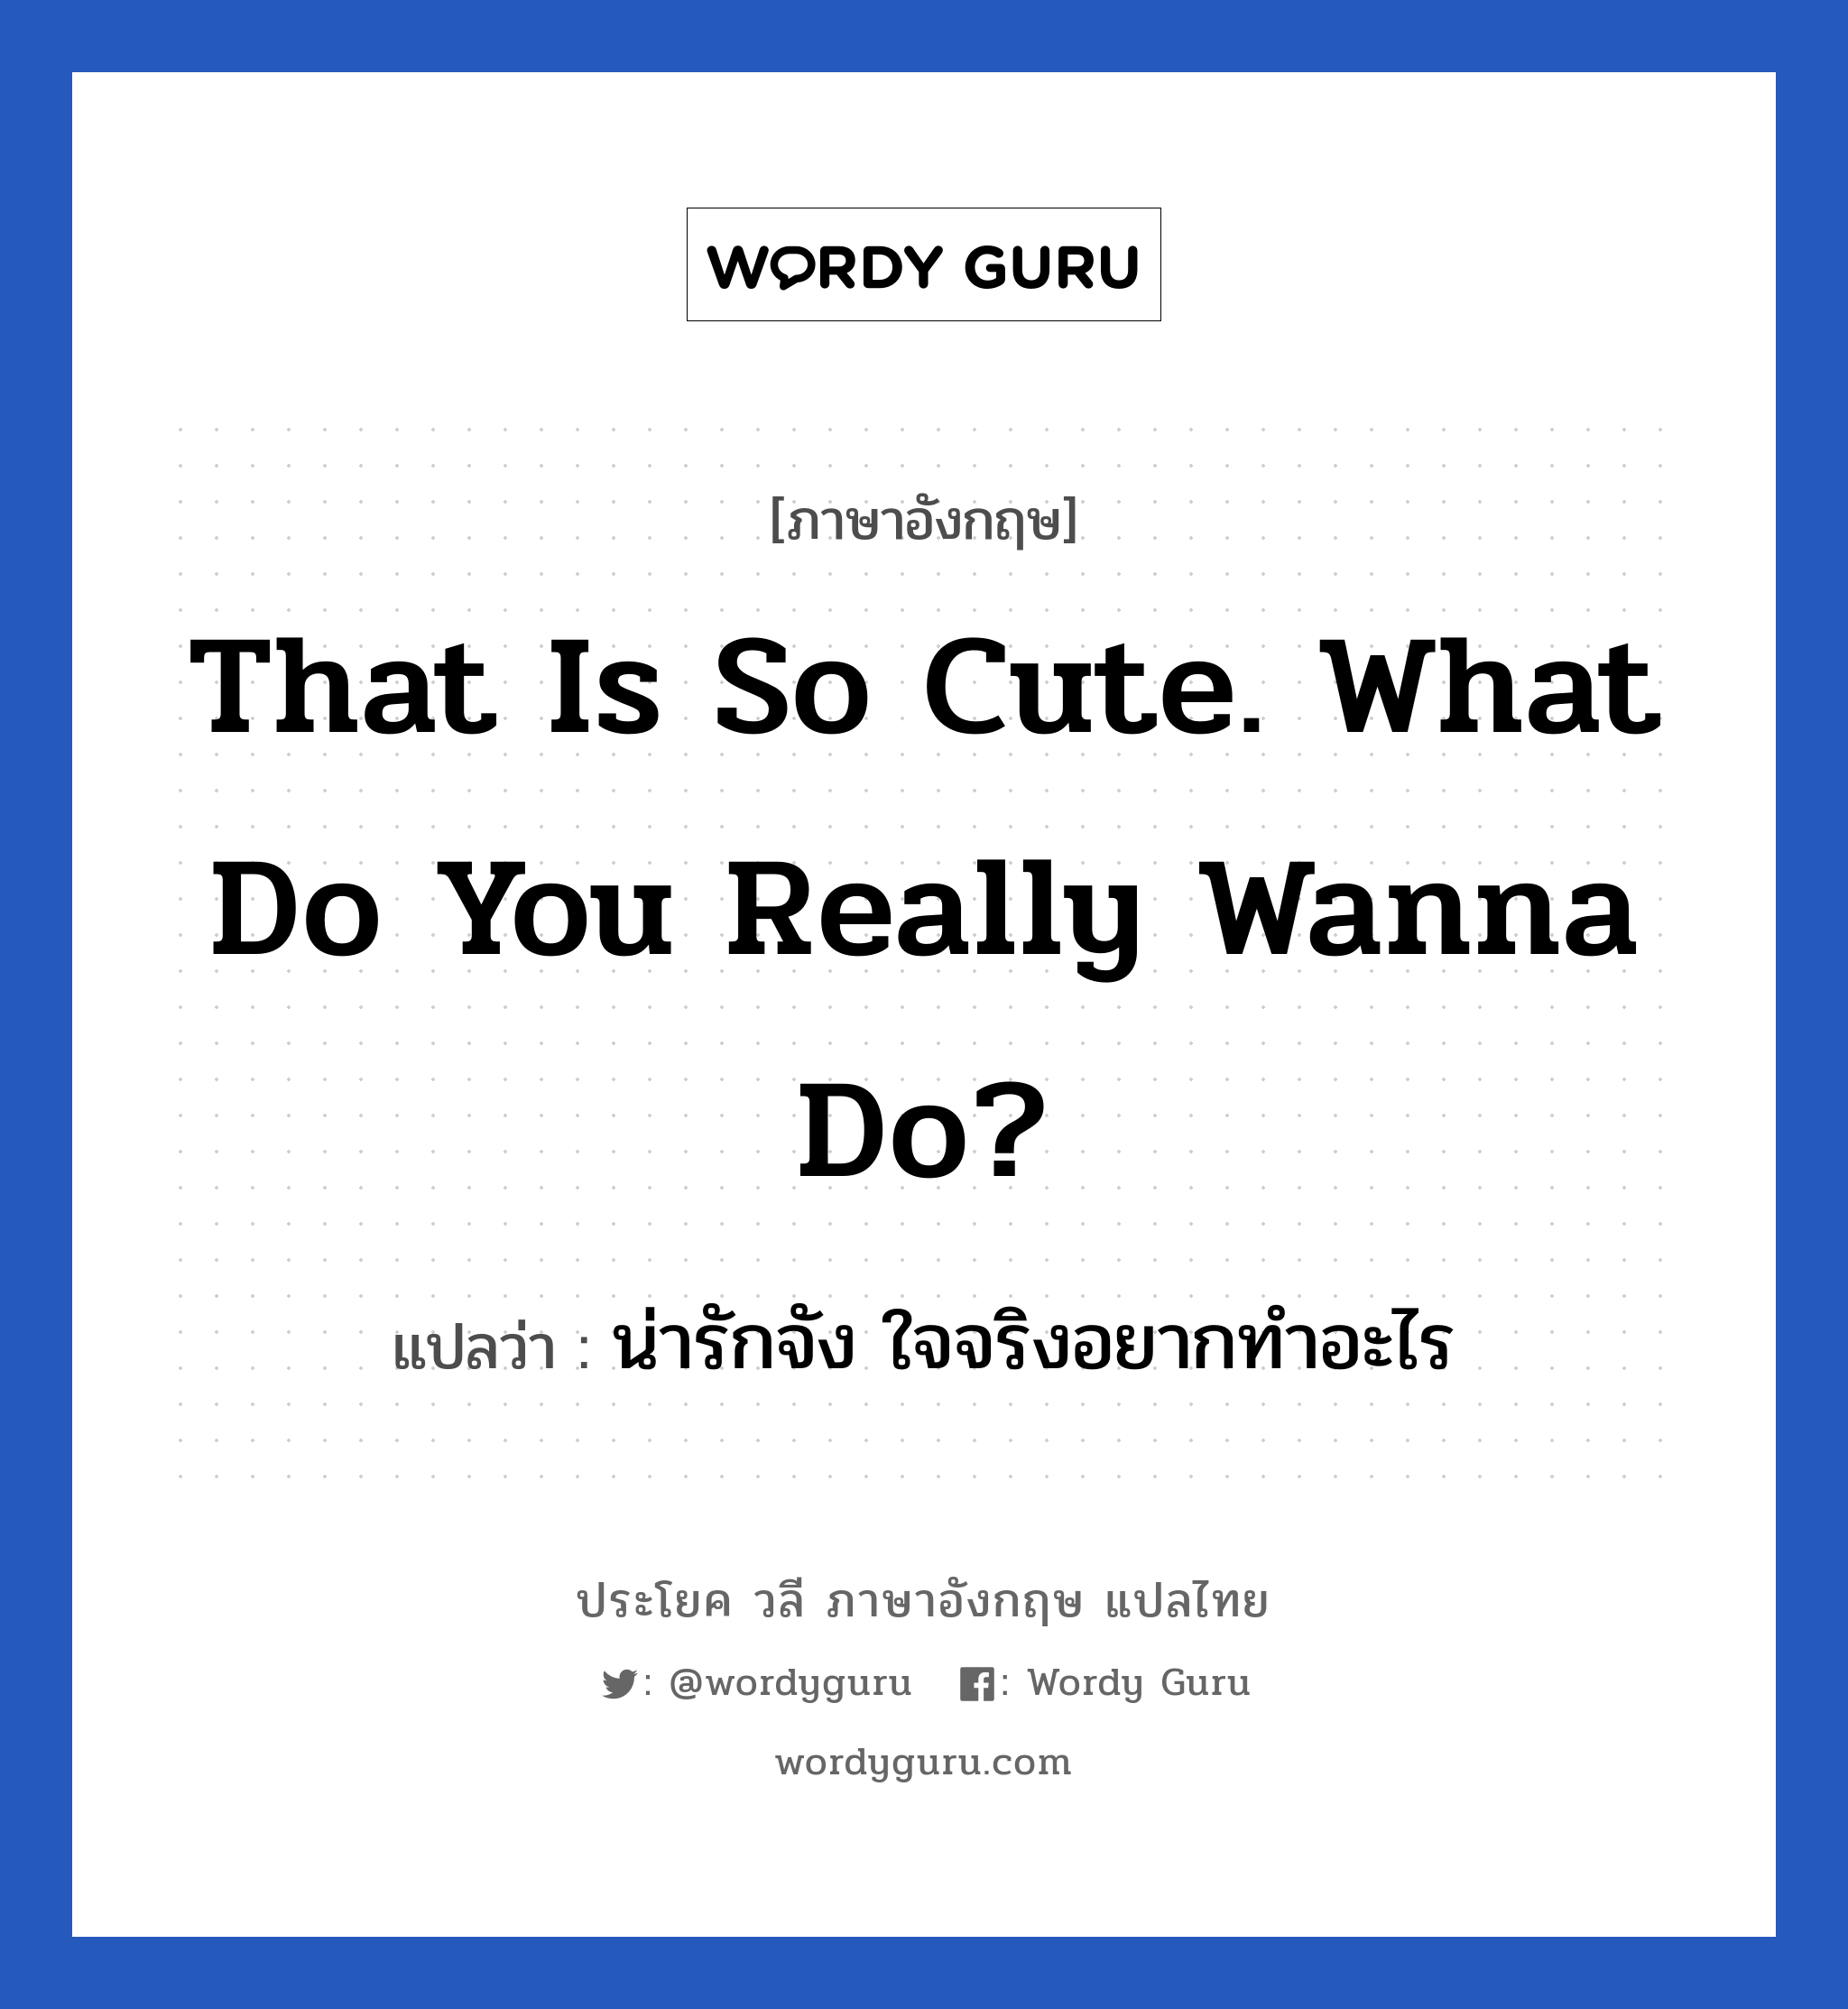 น่ารักจัง ใจจริงอยากทำอะไร ภาษาอังกฤษ?, วลีภาษาอังกฤษ น่ารักจัง ใจจริงอยากทำอะไร แปลว่า That is so cute. What do you really wanna do?